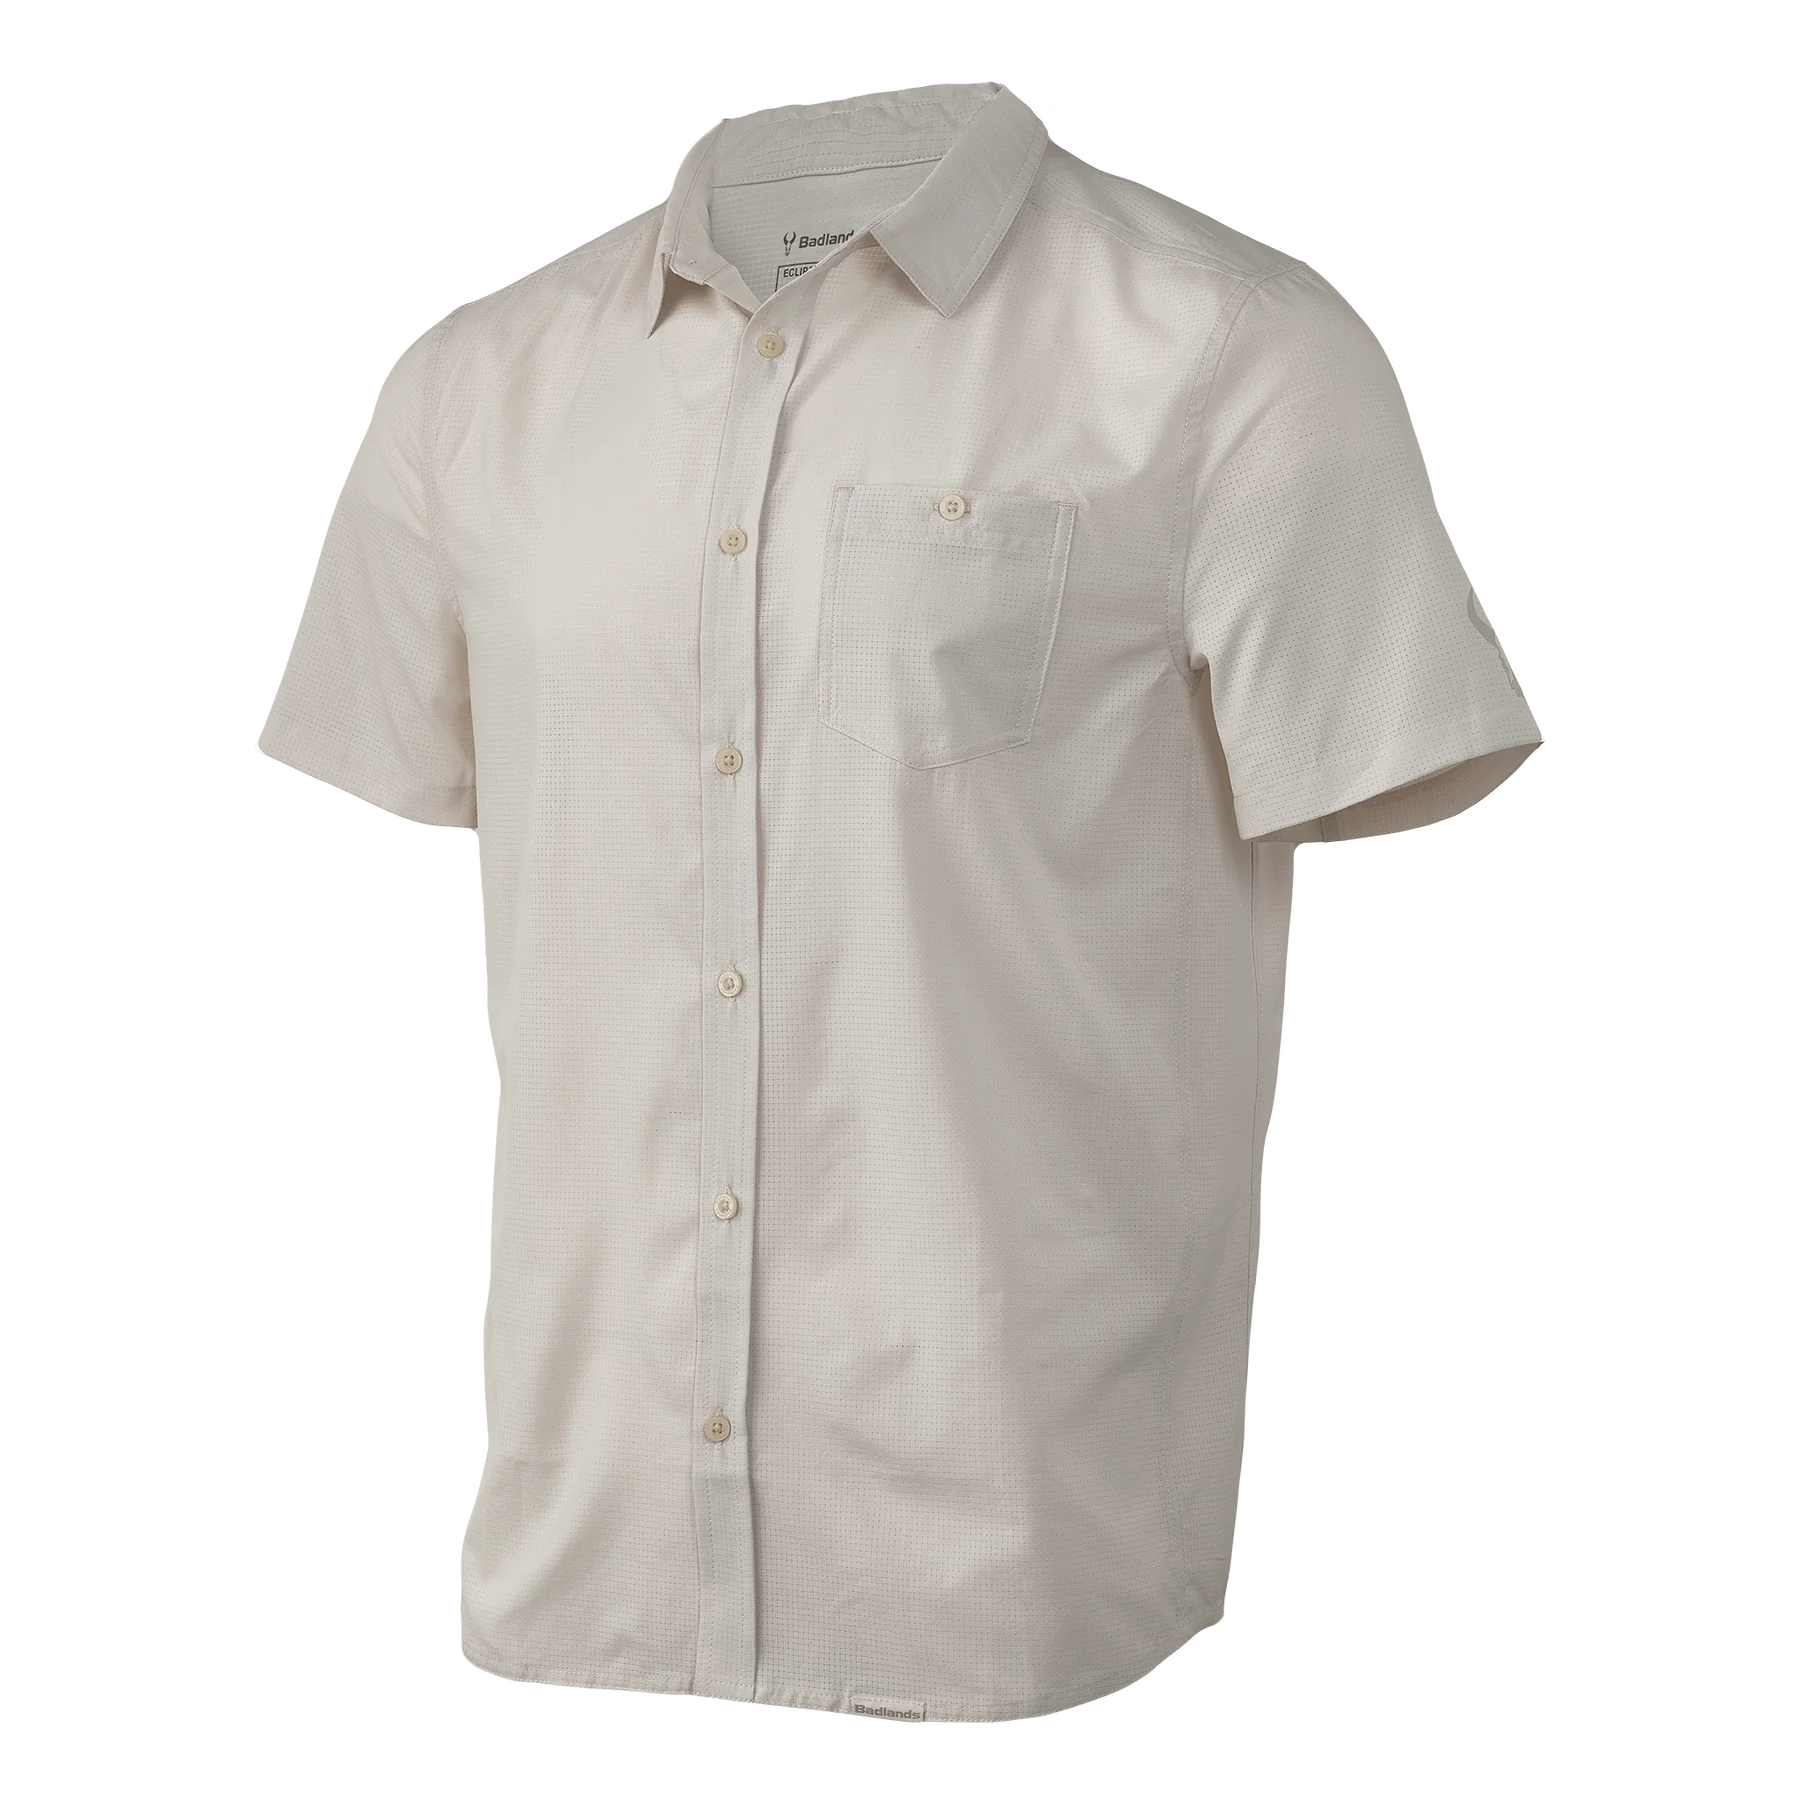 Badlands Eclipse Button-Up Shirt